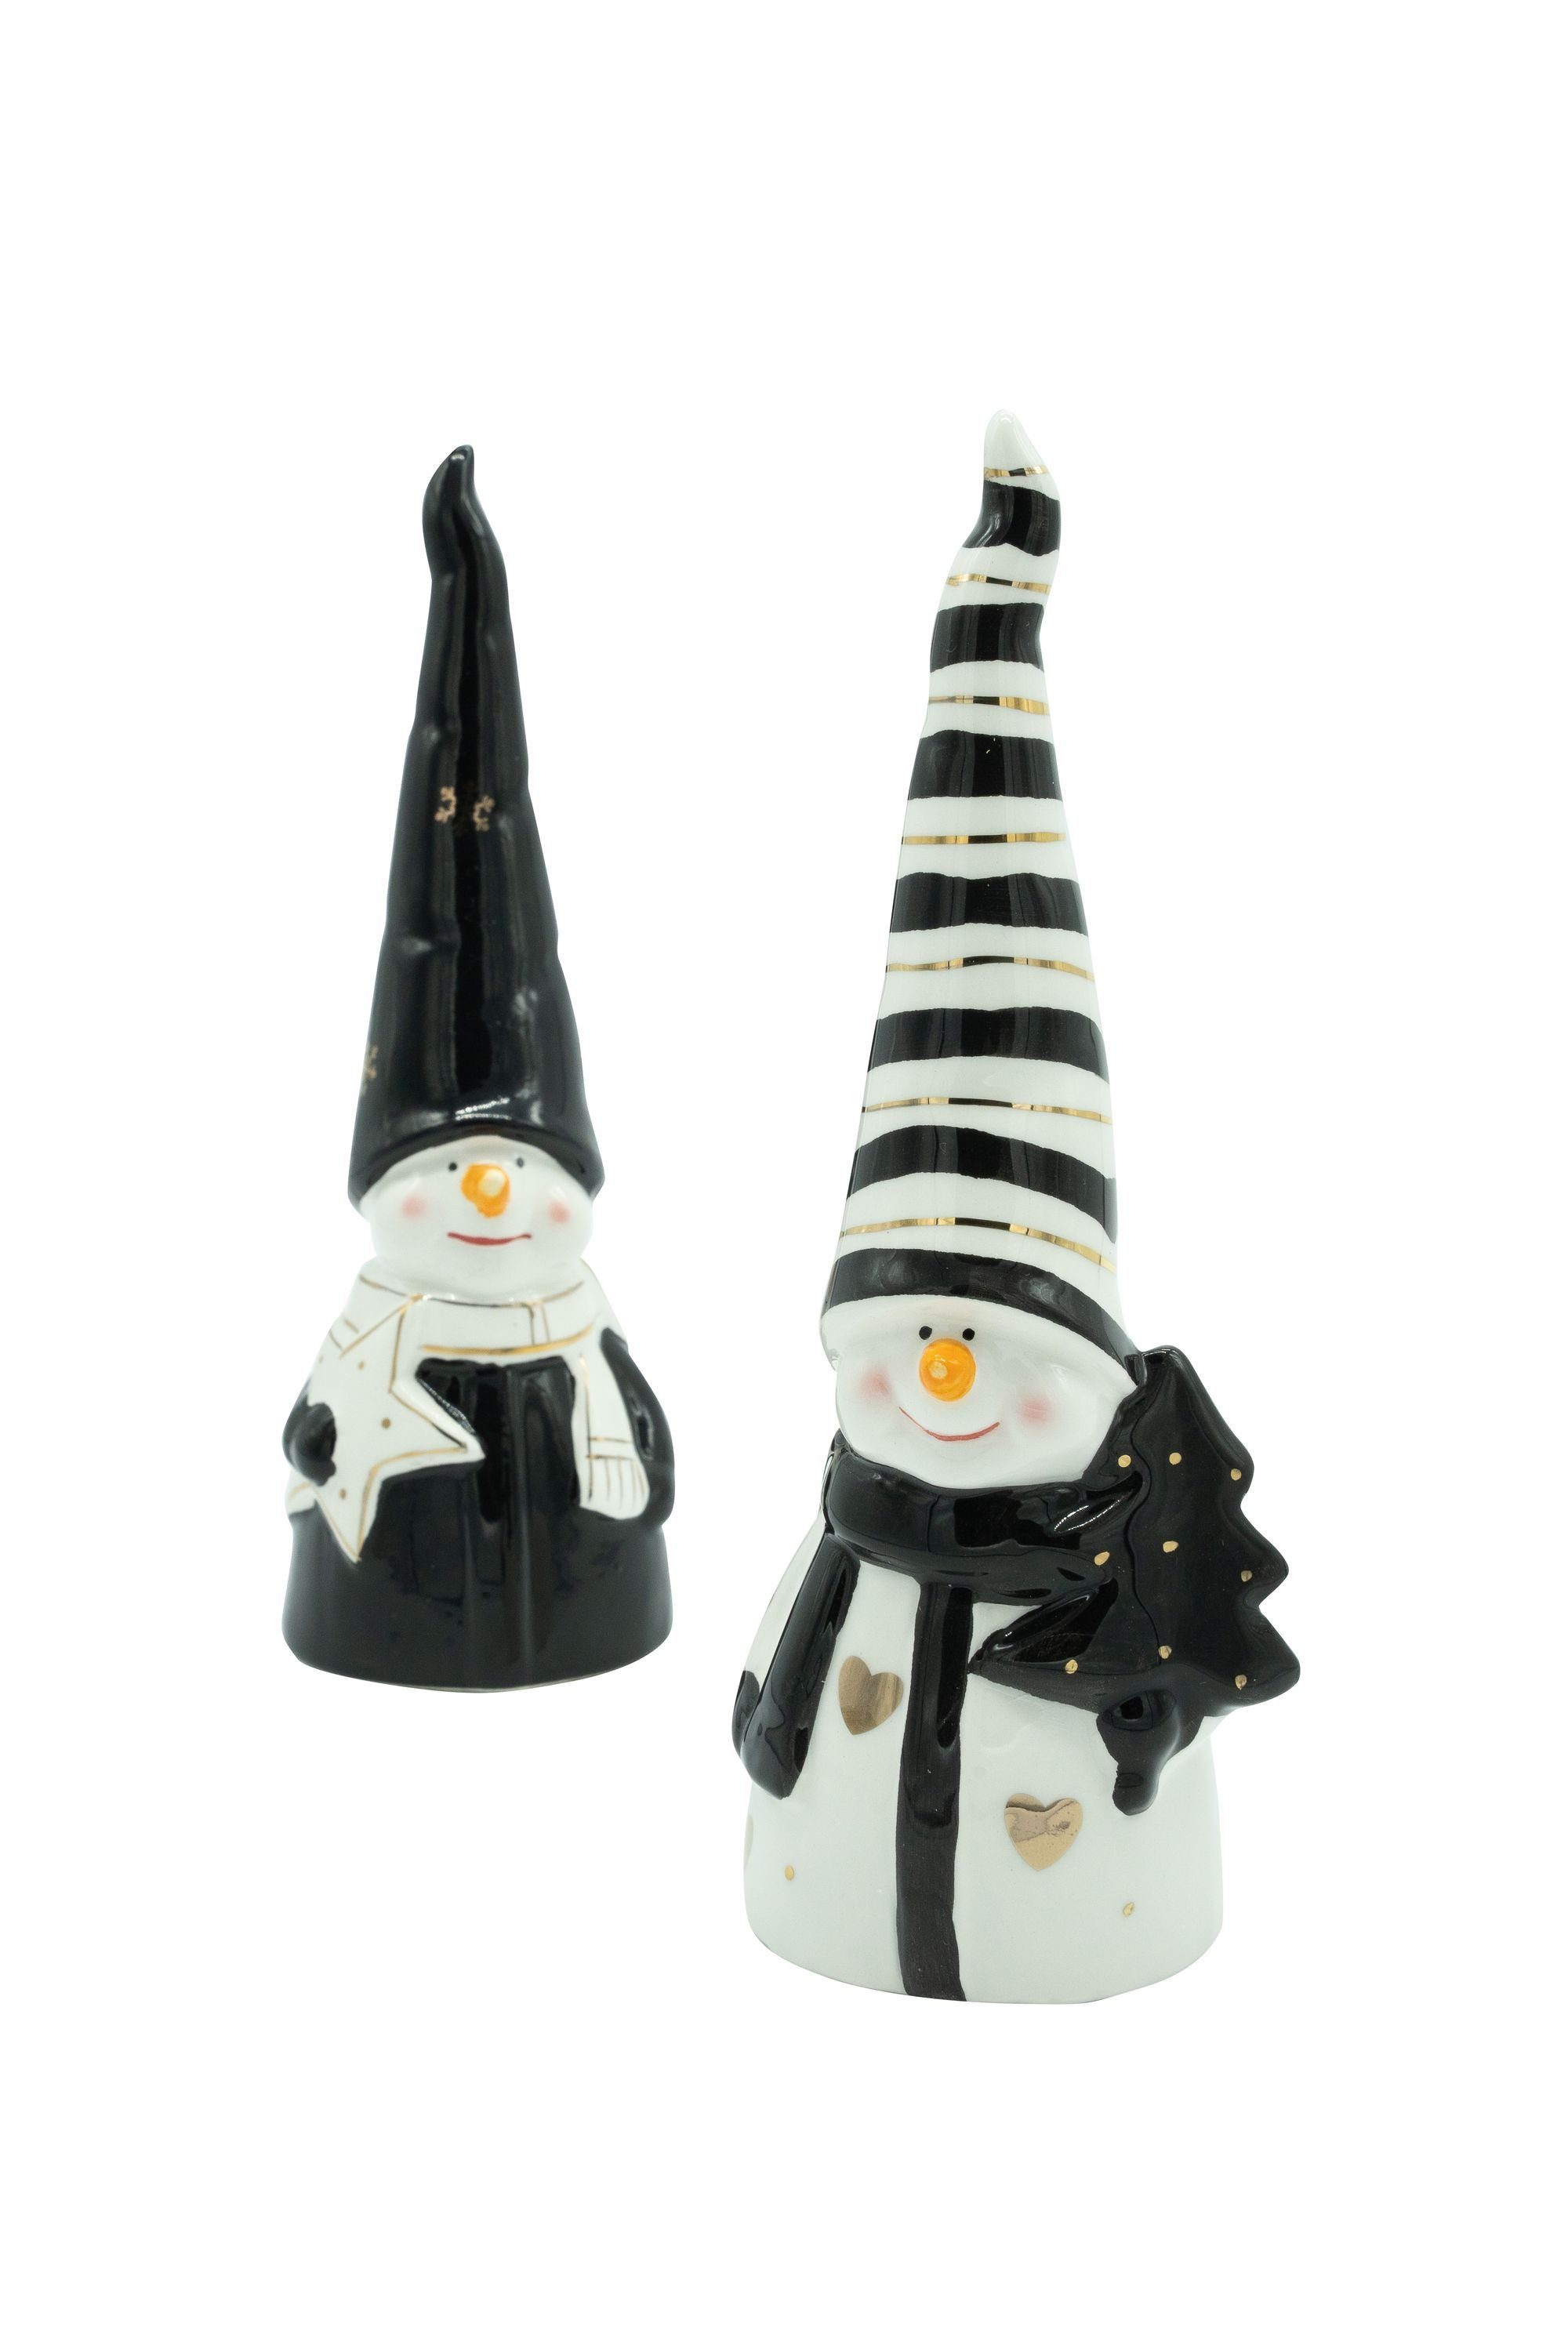 aus DECO schwarz/weiß, Heitmann 2x Keramik, Schneemann, Weihnachtsfigur